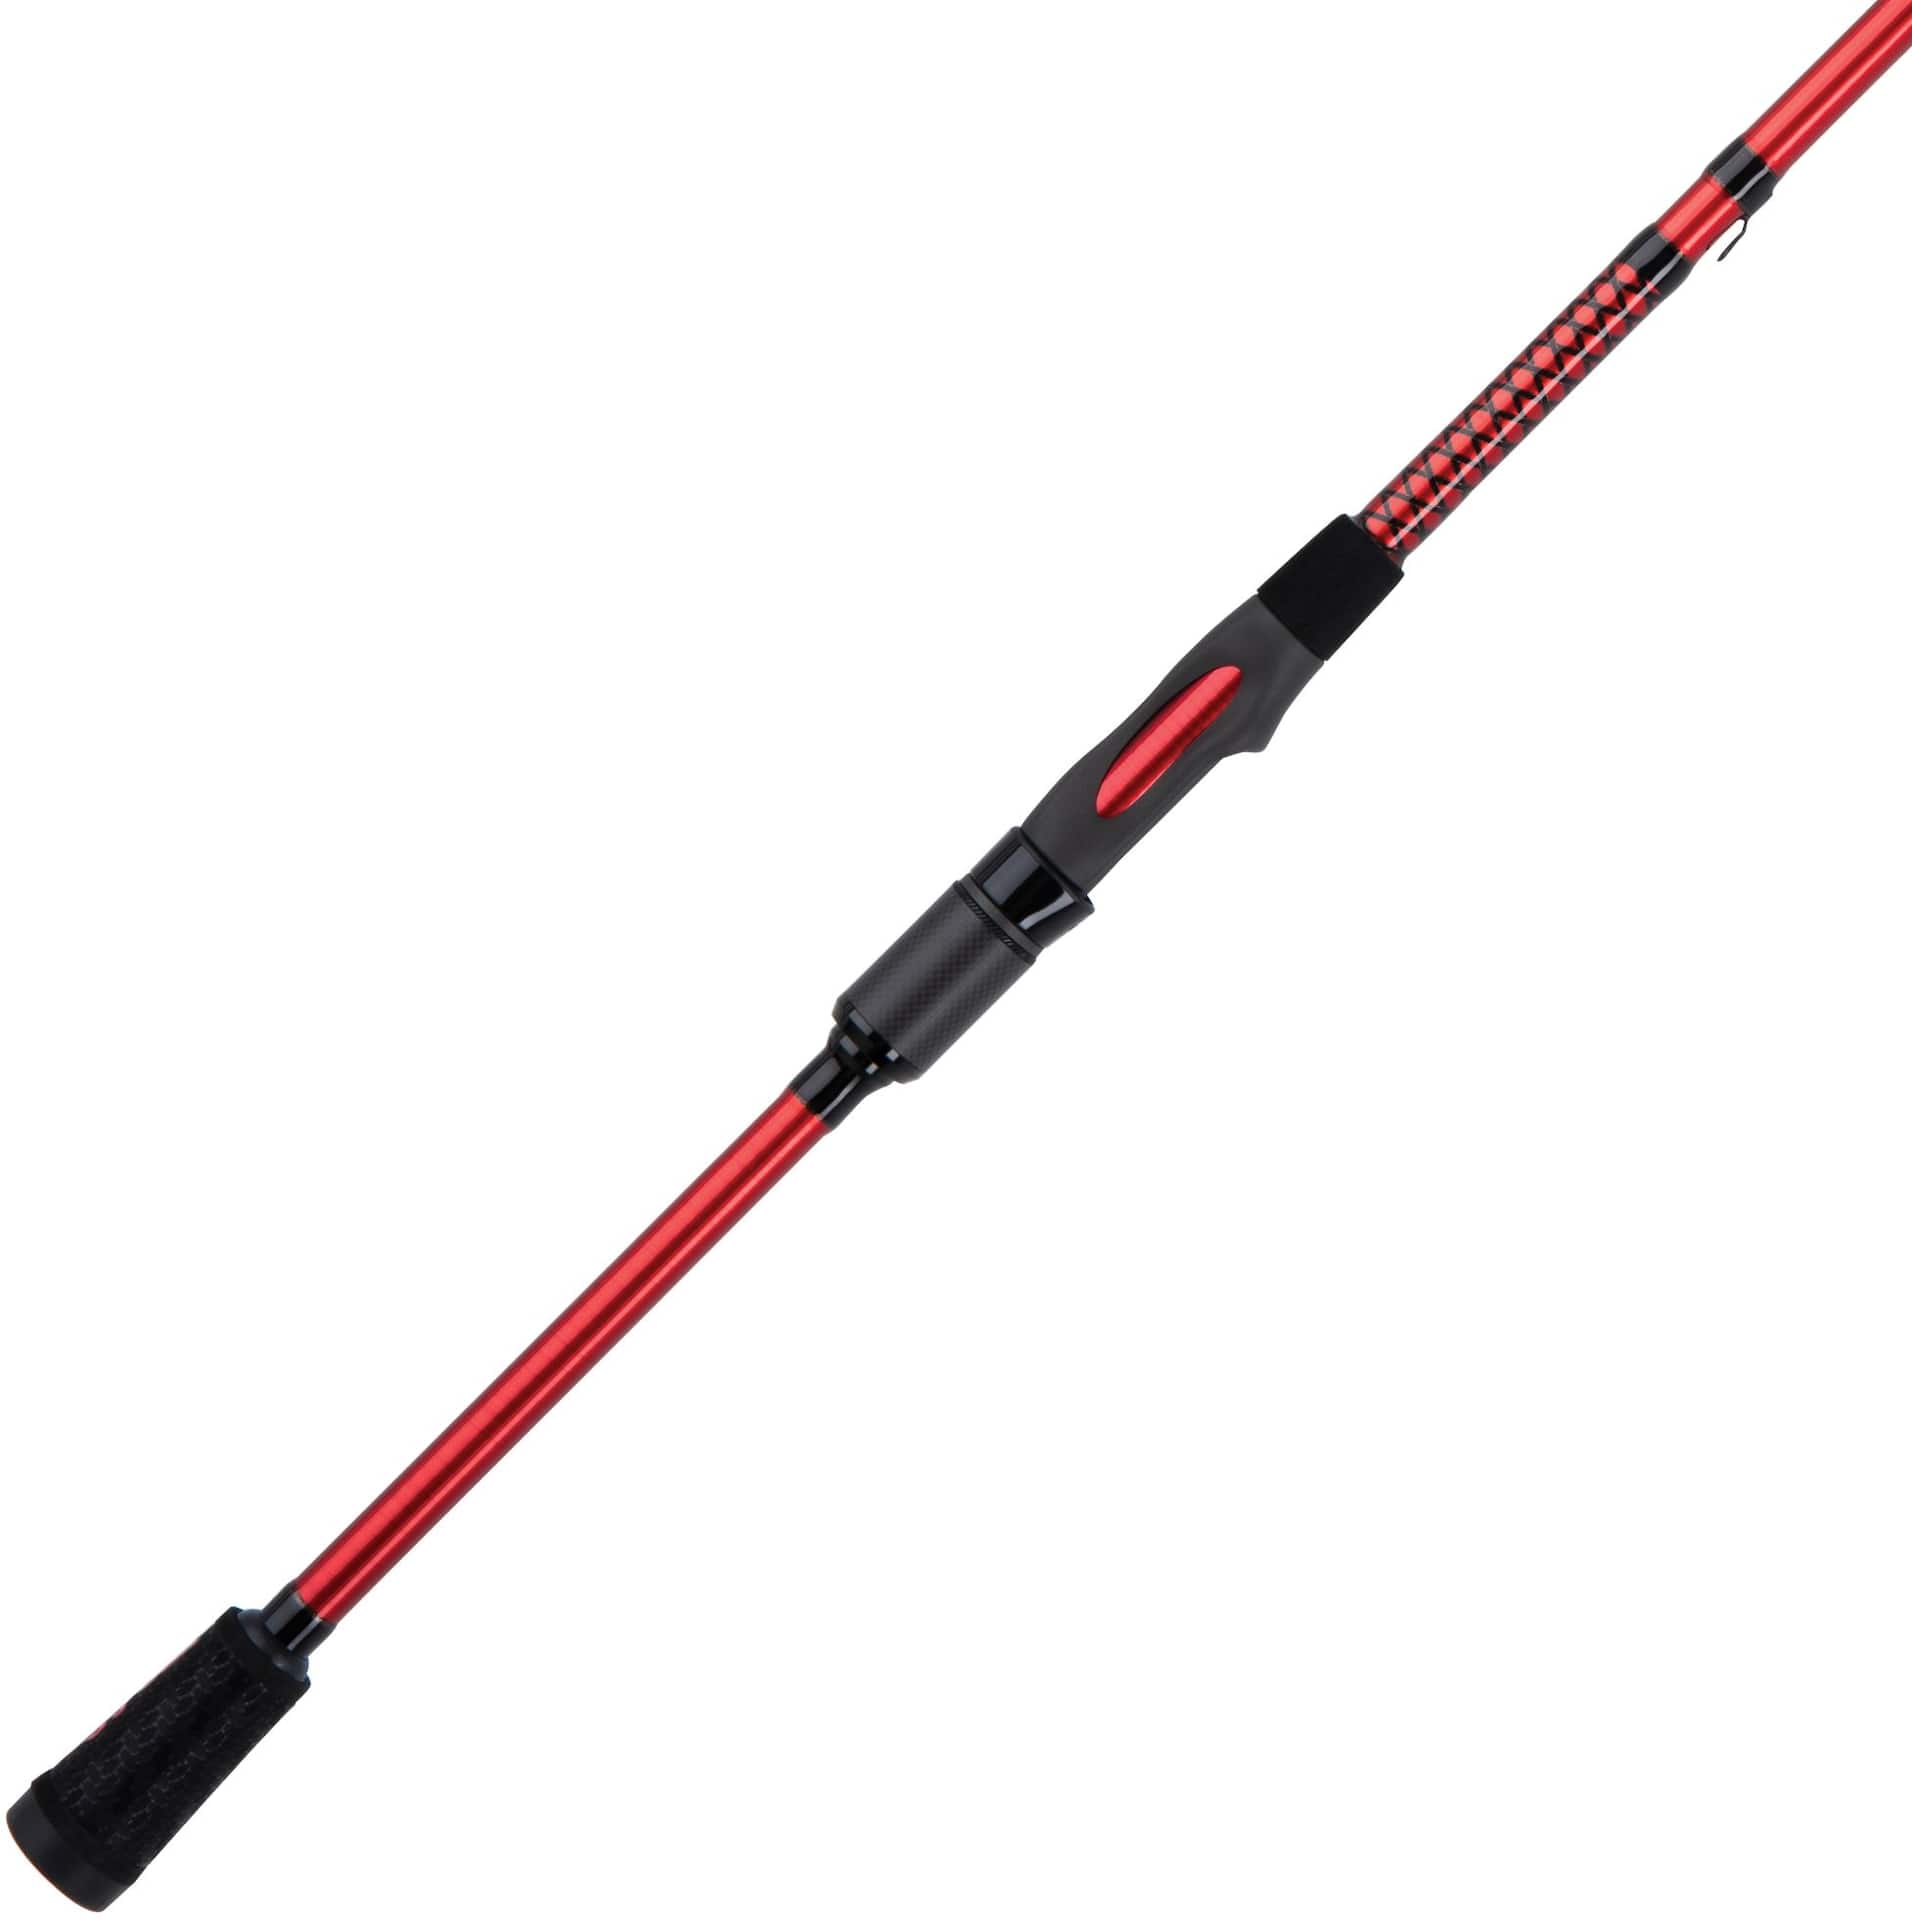 2pcs Fishing Carbon Fiber Sticks 1-9mm Fishing Rod Pole Building